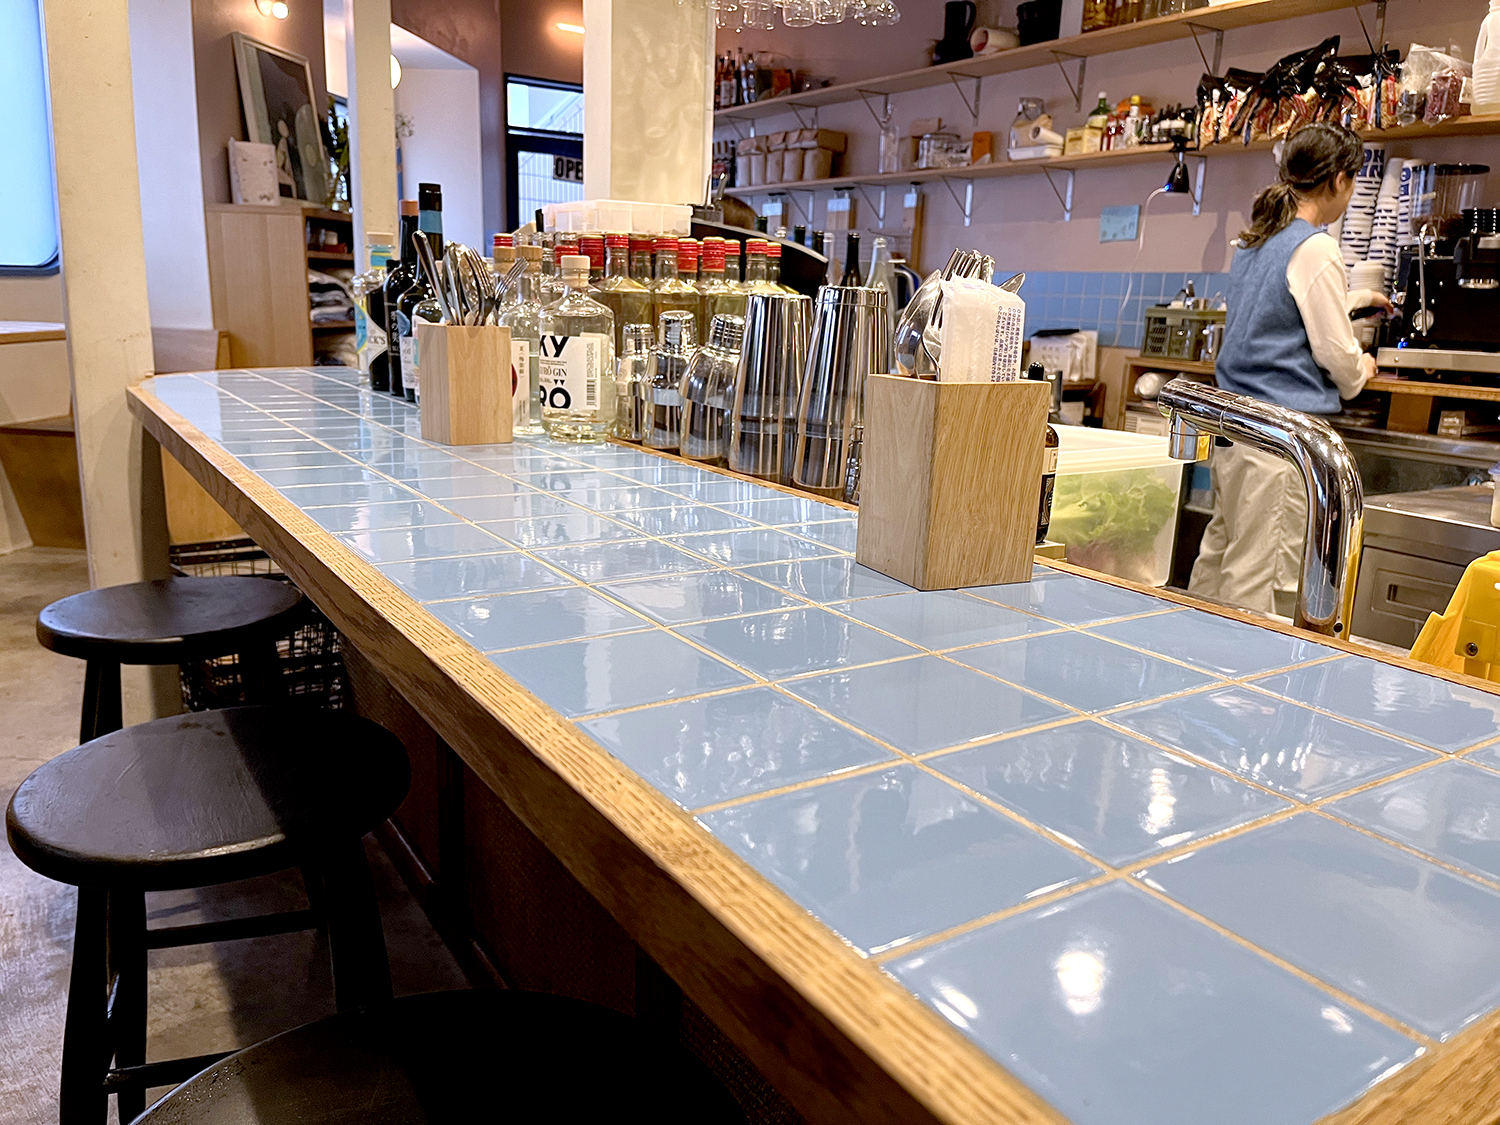 カウンターの青いタイルやテーブルの白いタイルは、昭和の頃のキッチンで一般的に使われていたものだそう。店内の差し色にもなっている。